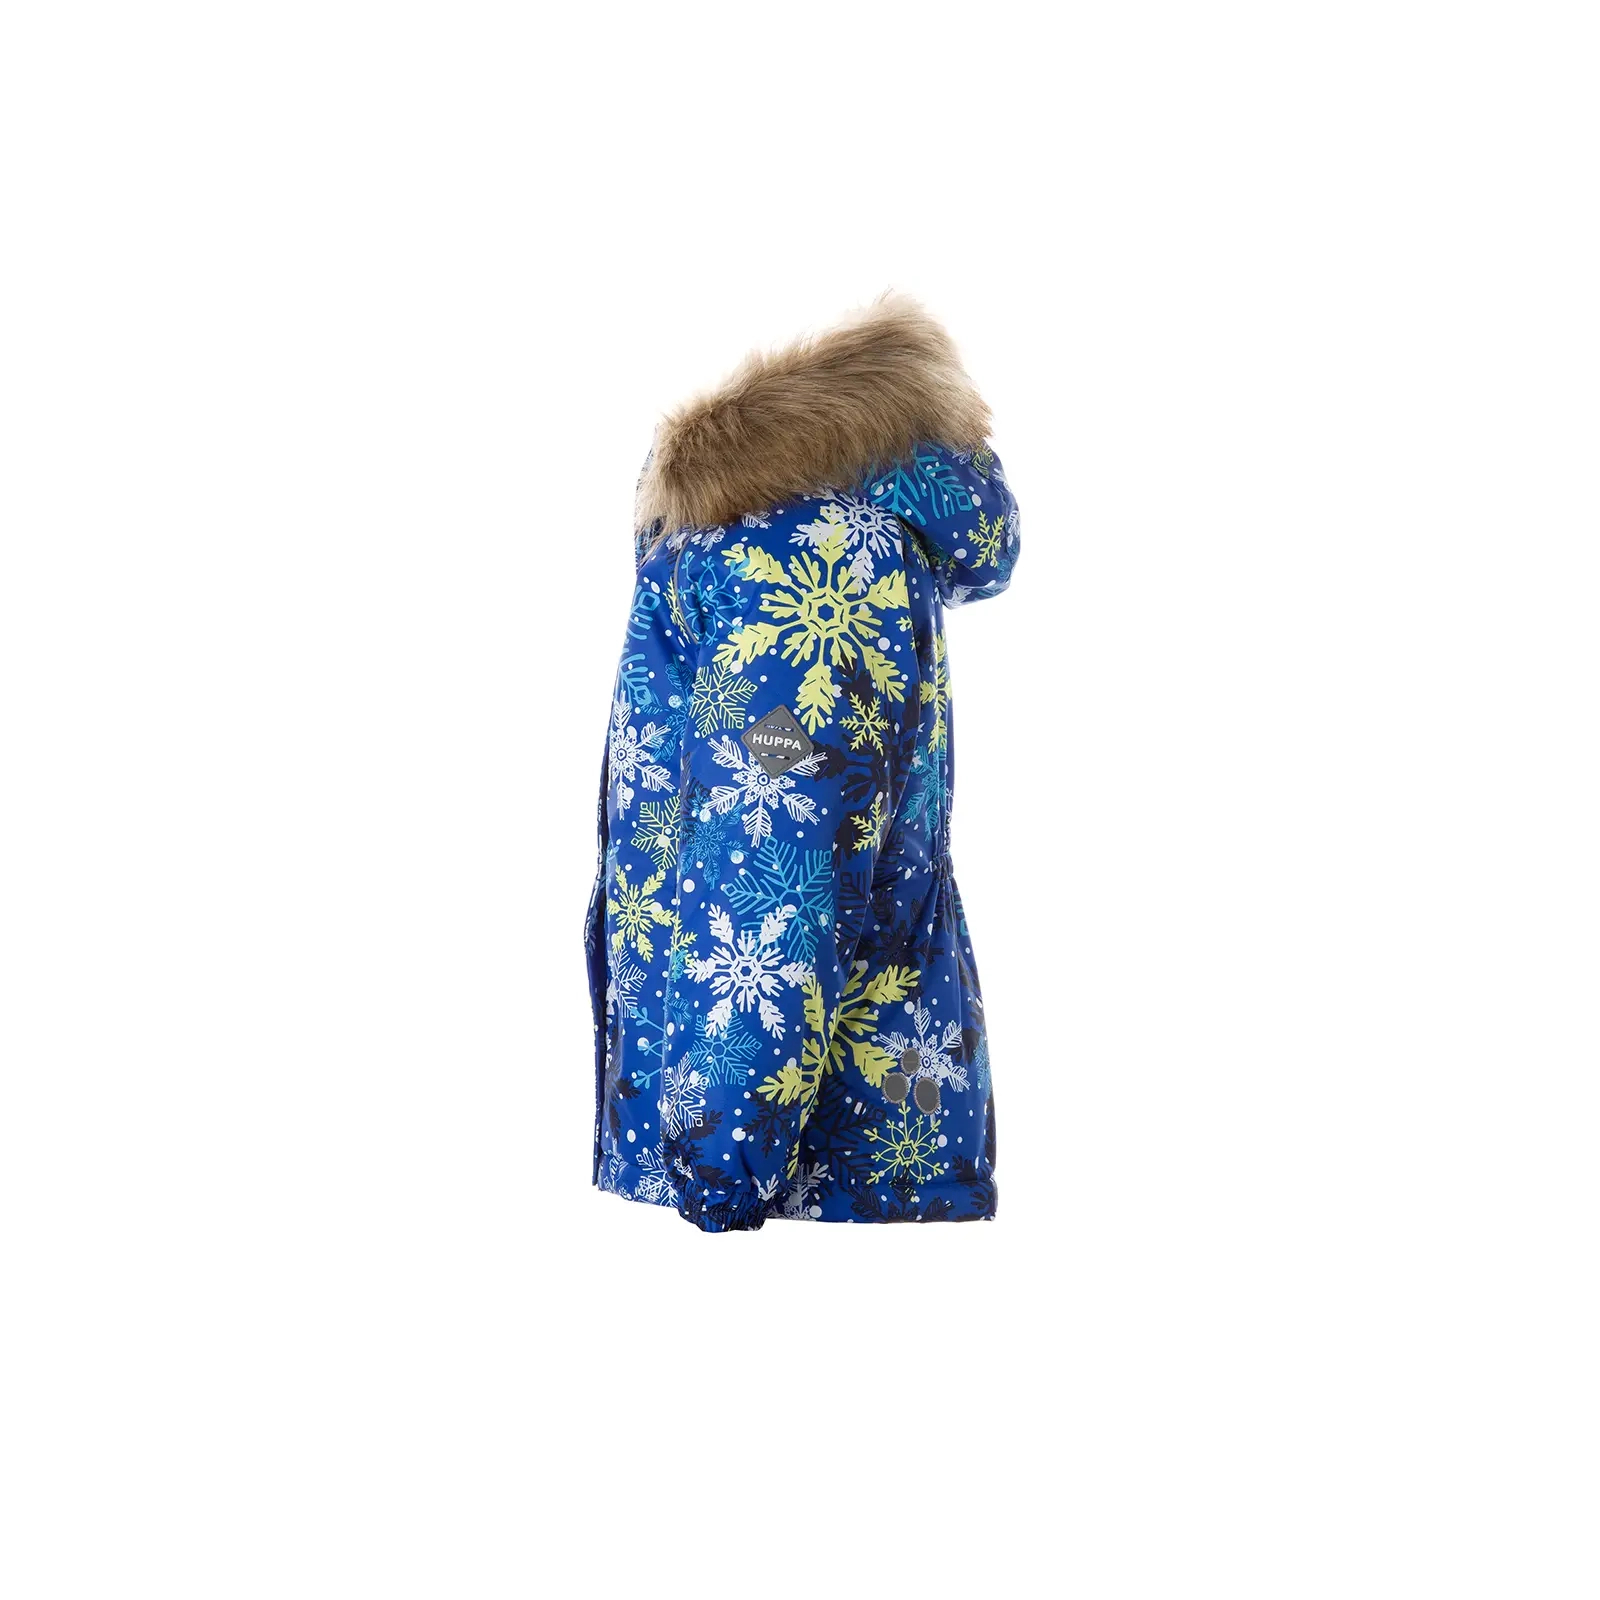 Куртка Huppa ALONDRA 18420030 синий с принтом 134 (4741632030046) изображение 3